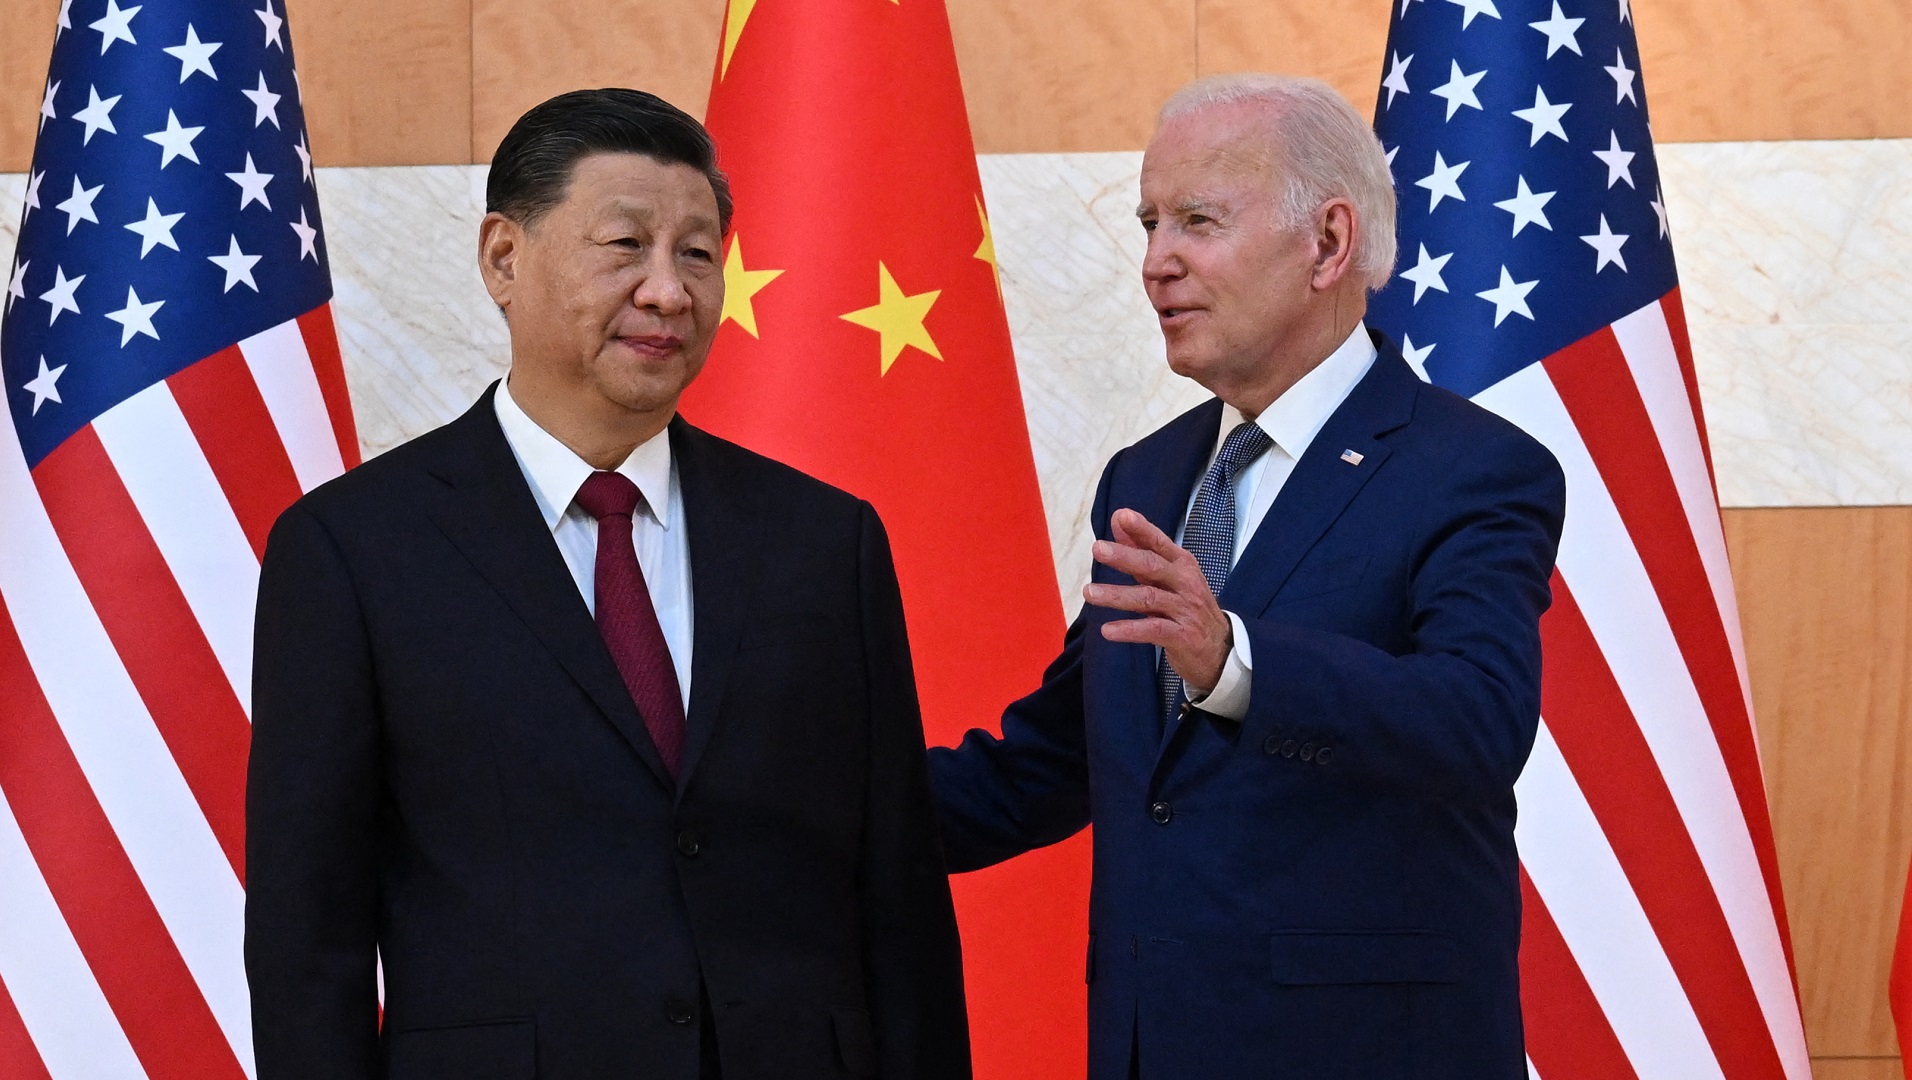 El supuesto estratégico básico sobre las perspectivas de la región es que la rivalidad entre EEUU y China creará presiones sobre los gobiernos, pero también proveerá oportunidades. En la foto, los presidentes de ambos países, Joe Biden y Xi Jinping, en el G20 en BaliPhoto by SAUL LOEB / AFP